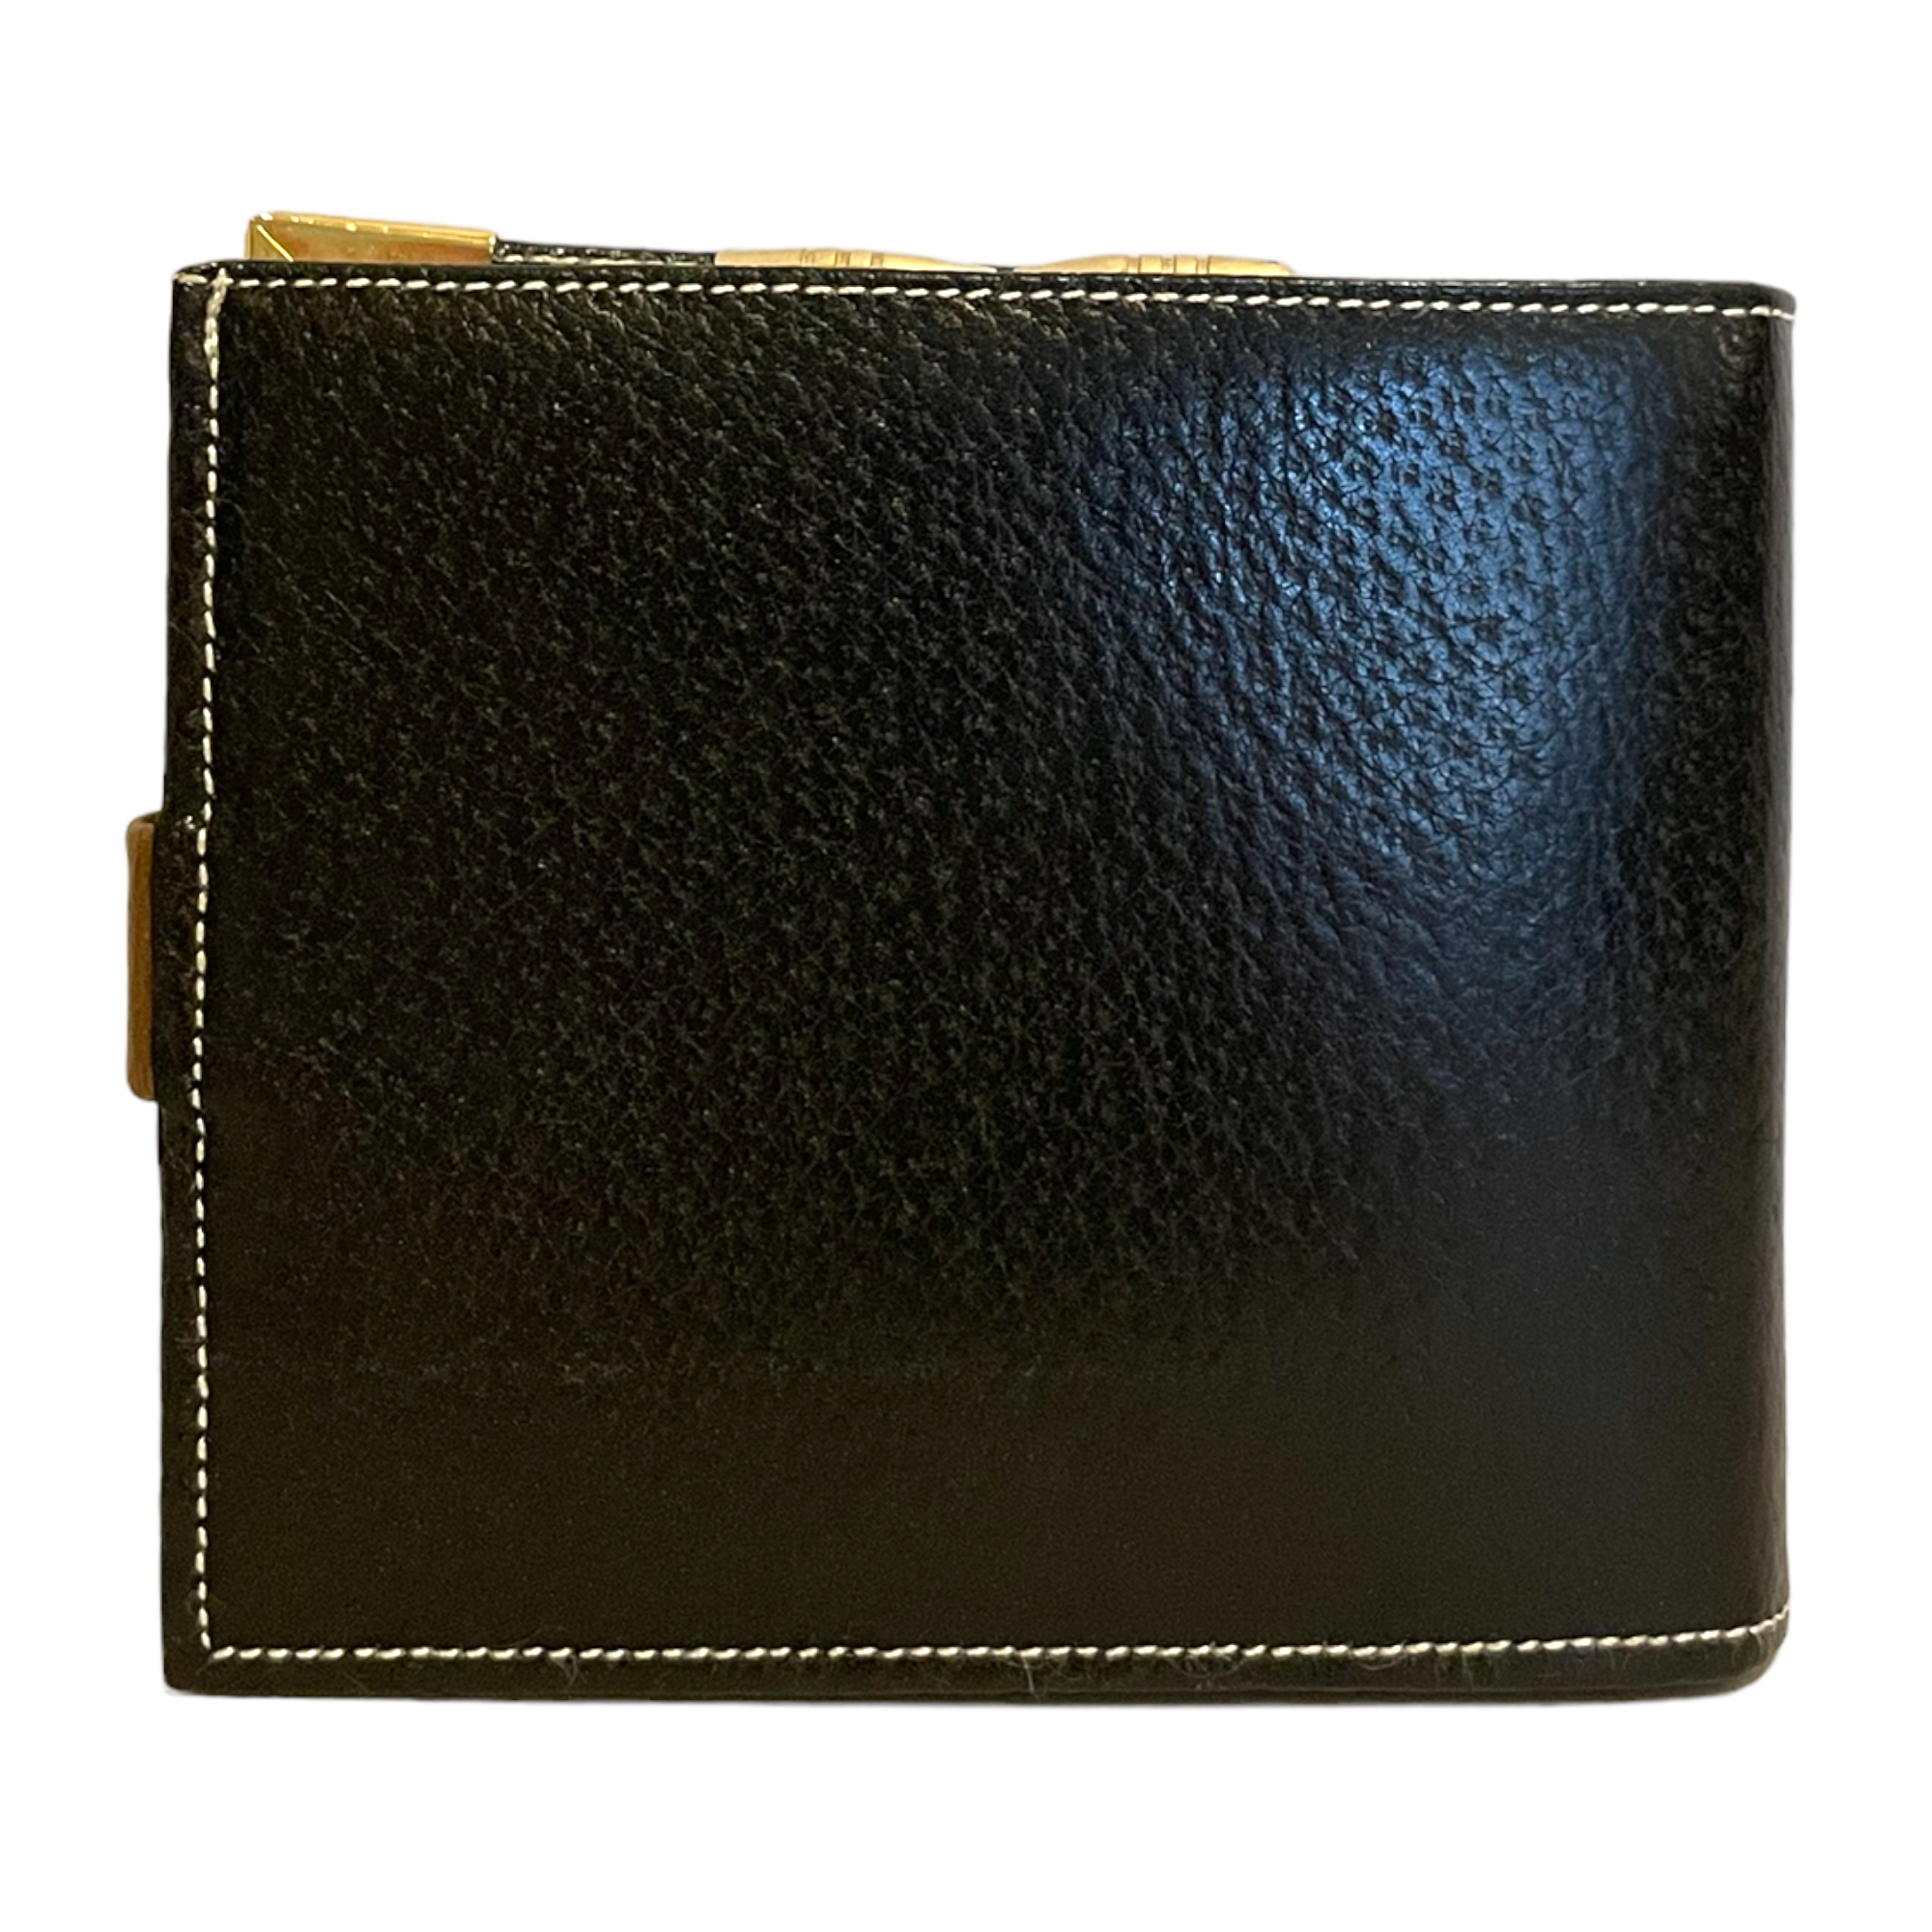 GUCCI RARE & UNIQUE Vintage GUCCI Bi-Fold Two-Tone Leather Wallet